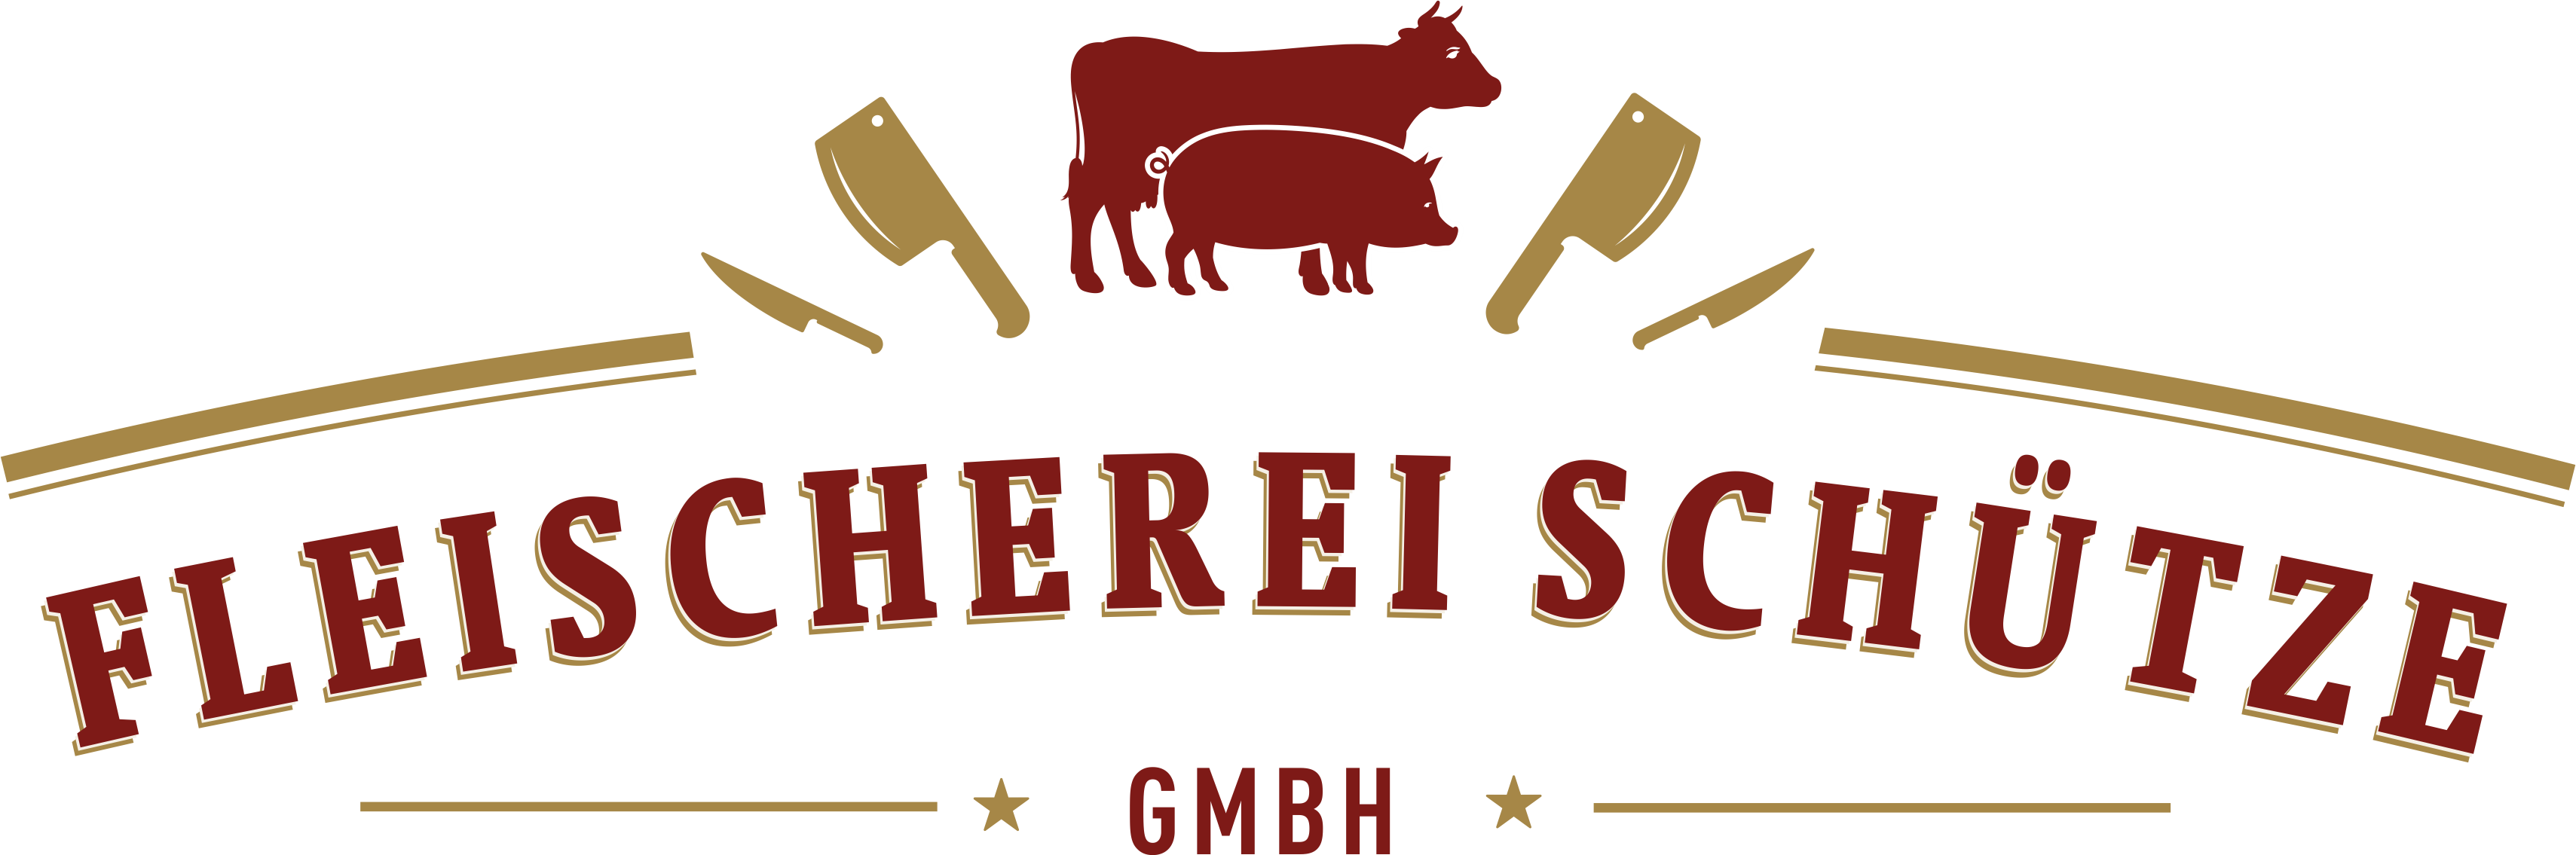 Fleischerei Schütze - Heimat mit Geschmack - Logo